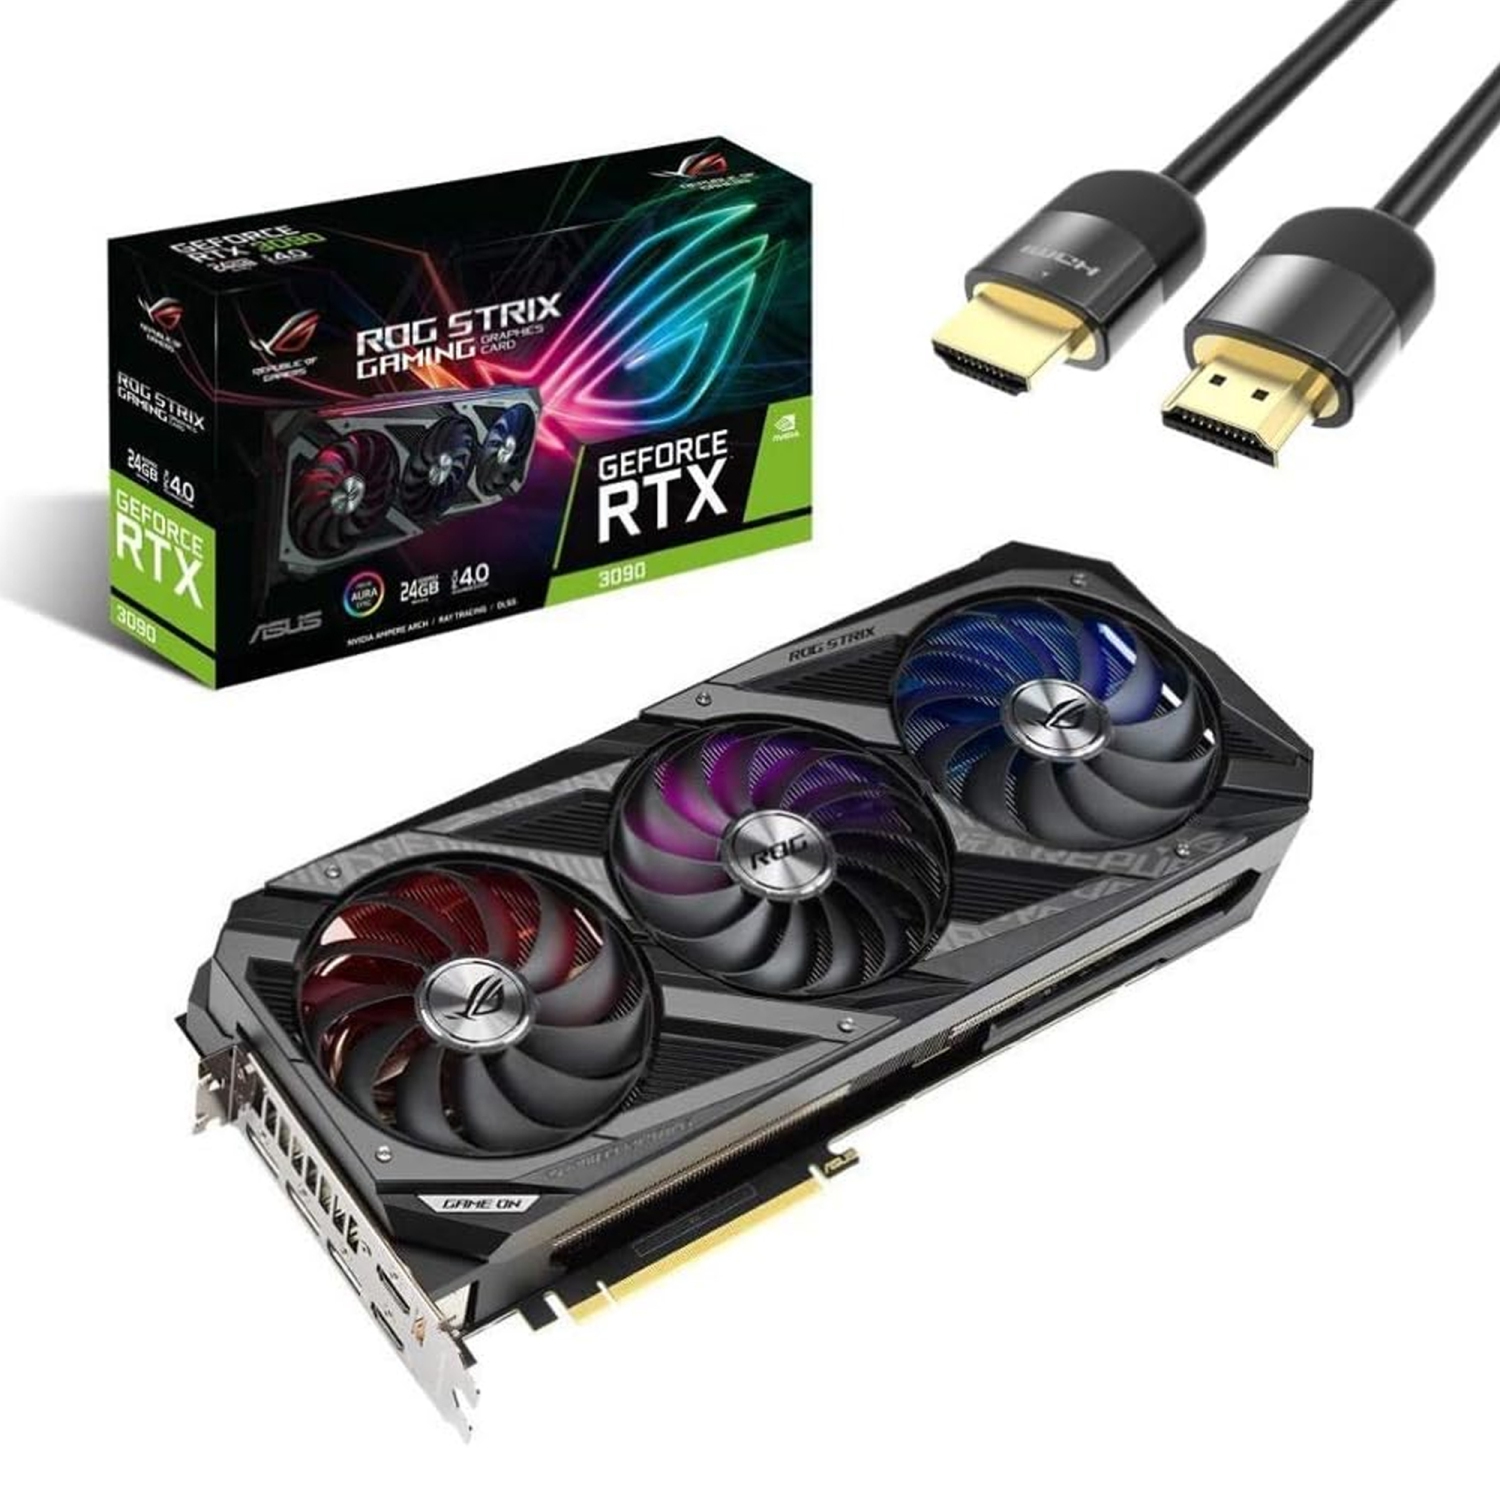 ASUS ROG Strix GeForce RTX 3090 OC Graphics Card, 24GB GDDR6X, PCIe 4.0, VR Ready, Ray Tracing, Axial-tech Fan Design, DisplayPort x 3(v1.4a) / HDMI 2.1 x2 w/ Mytrix HDMI 2.1